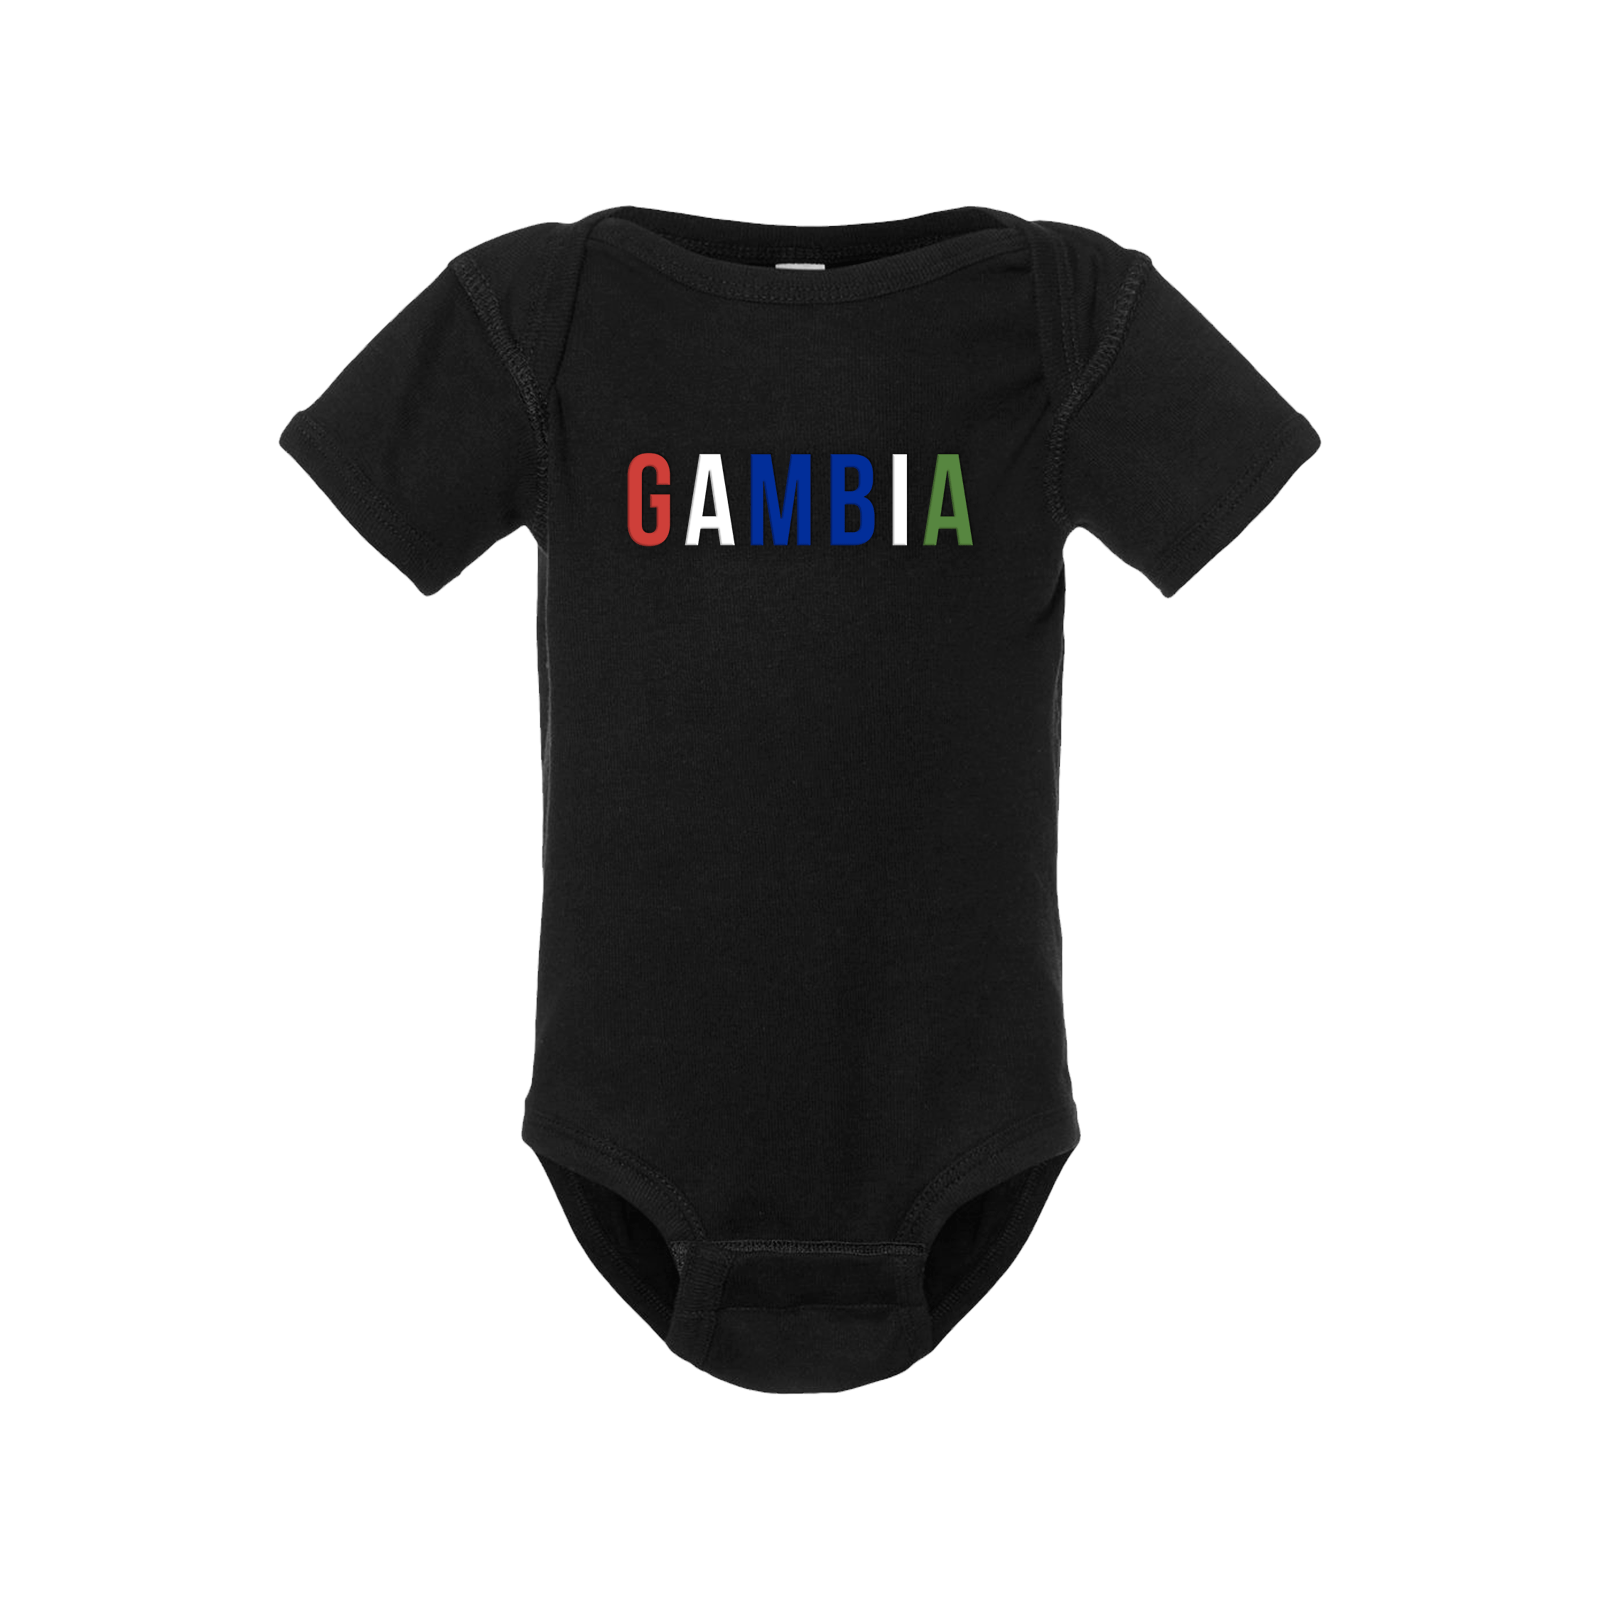 Gambia Short Sleeve Onesie - Babies & Toddlers